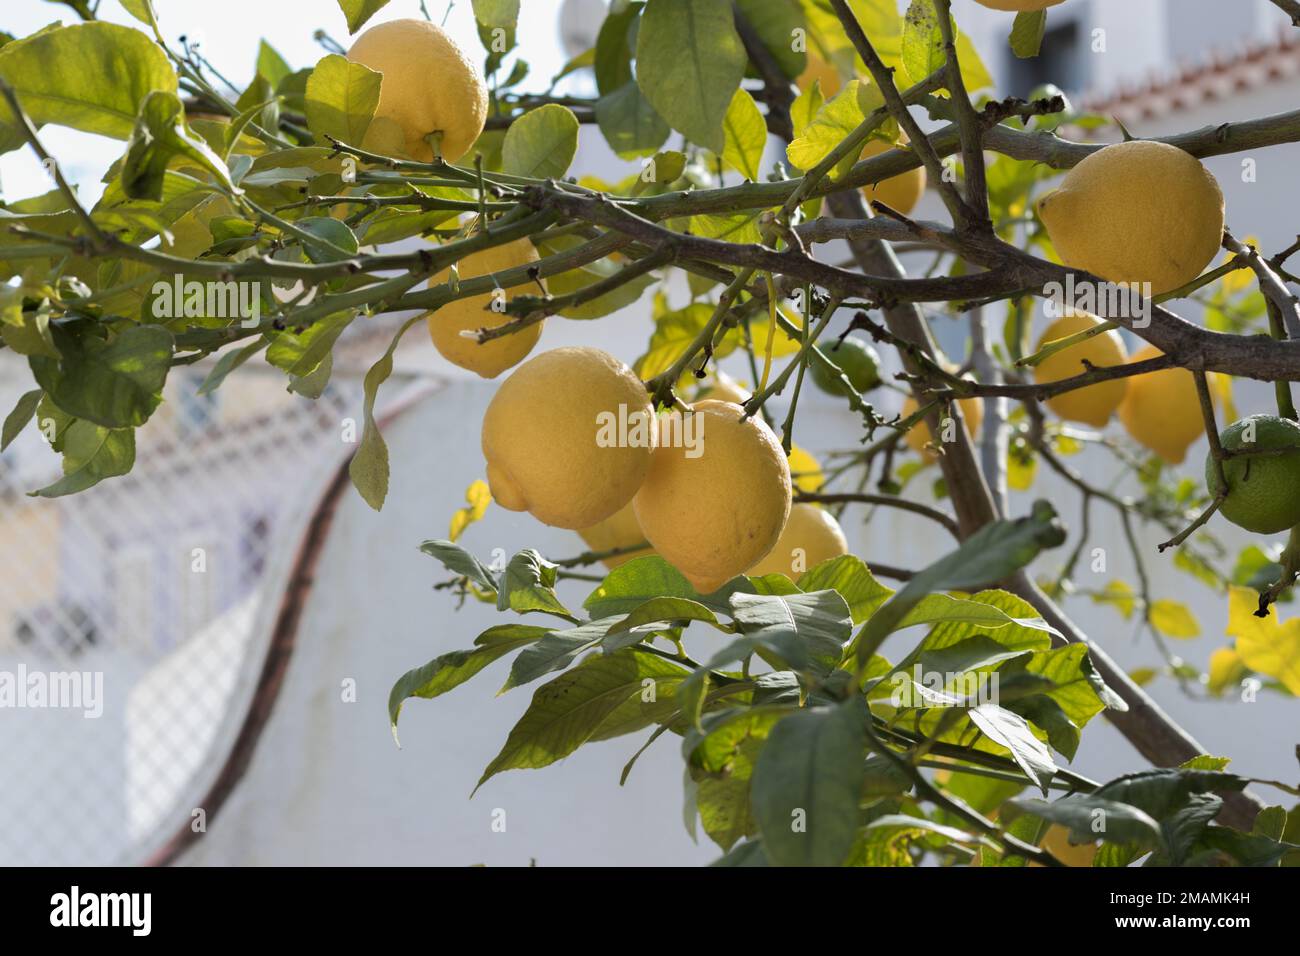 Agrumi giallo limone e foglie verdi in giardino nelle giornate limpide. Limone di agrumi che cresce su un ramo di albero, primo piano. Piante ornamentali da interno Foto Stock